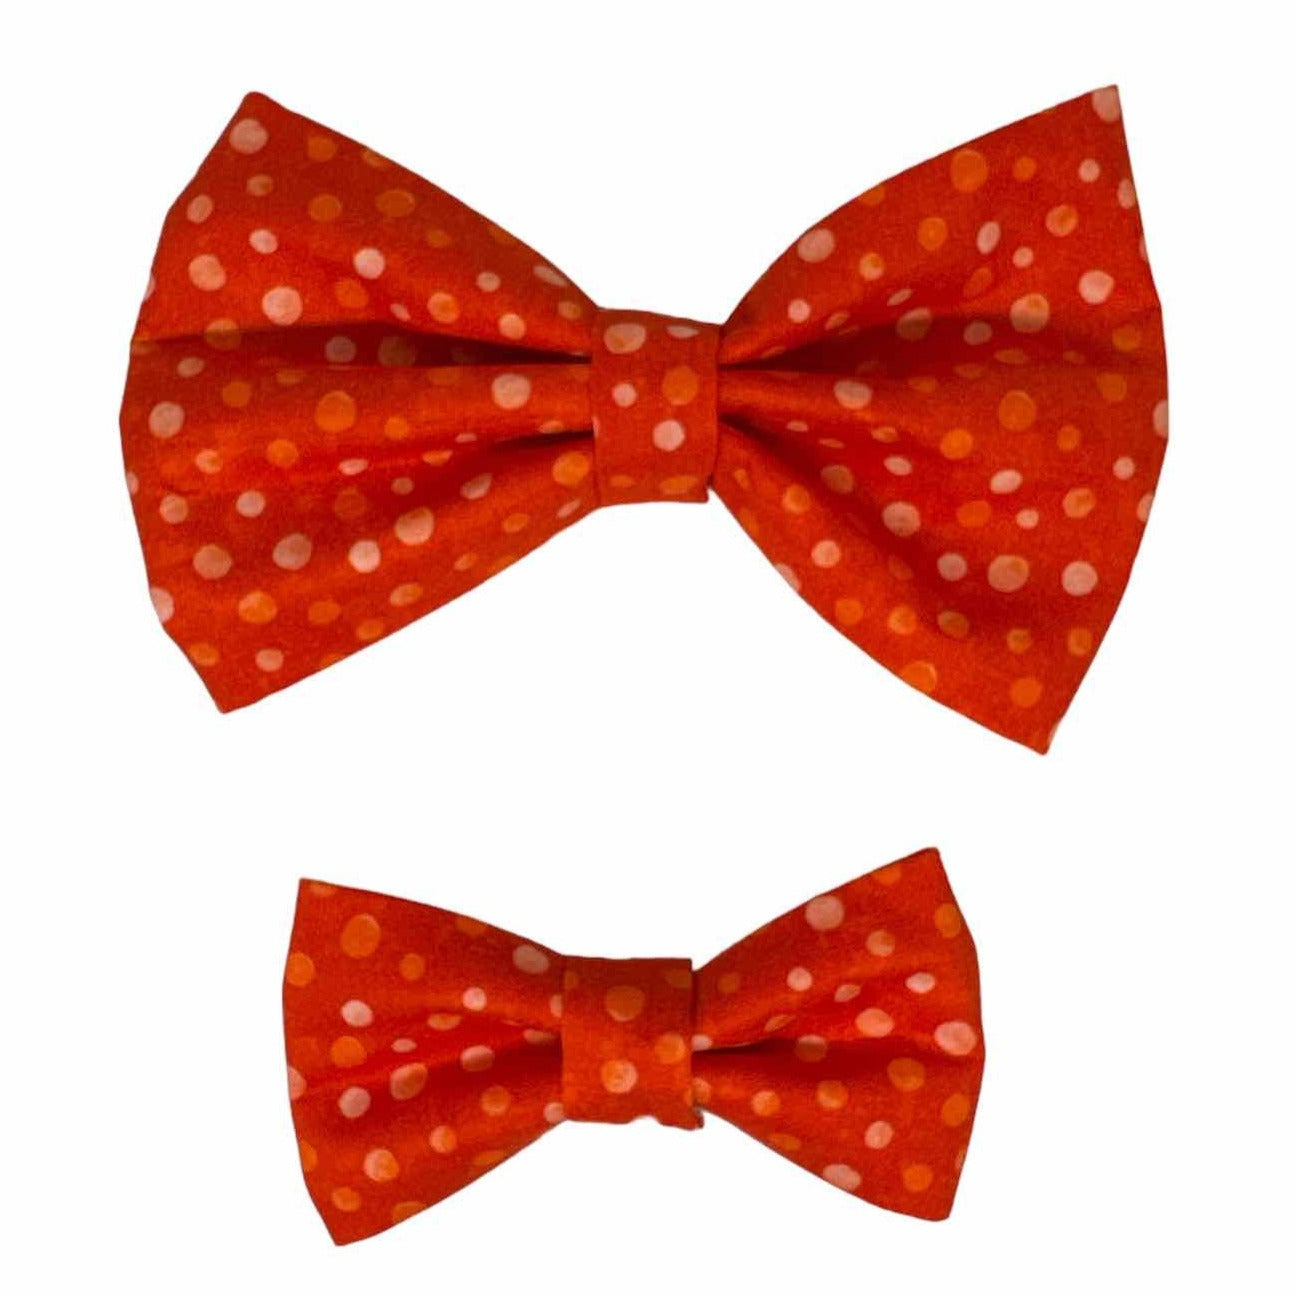 We Love Orange Polka Dot Batik Dog Bow Tie